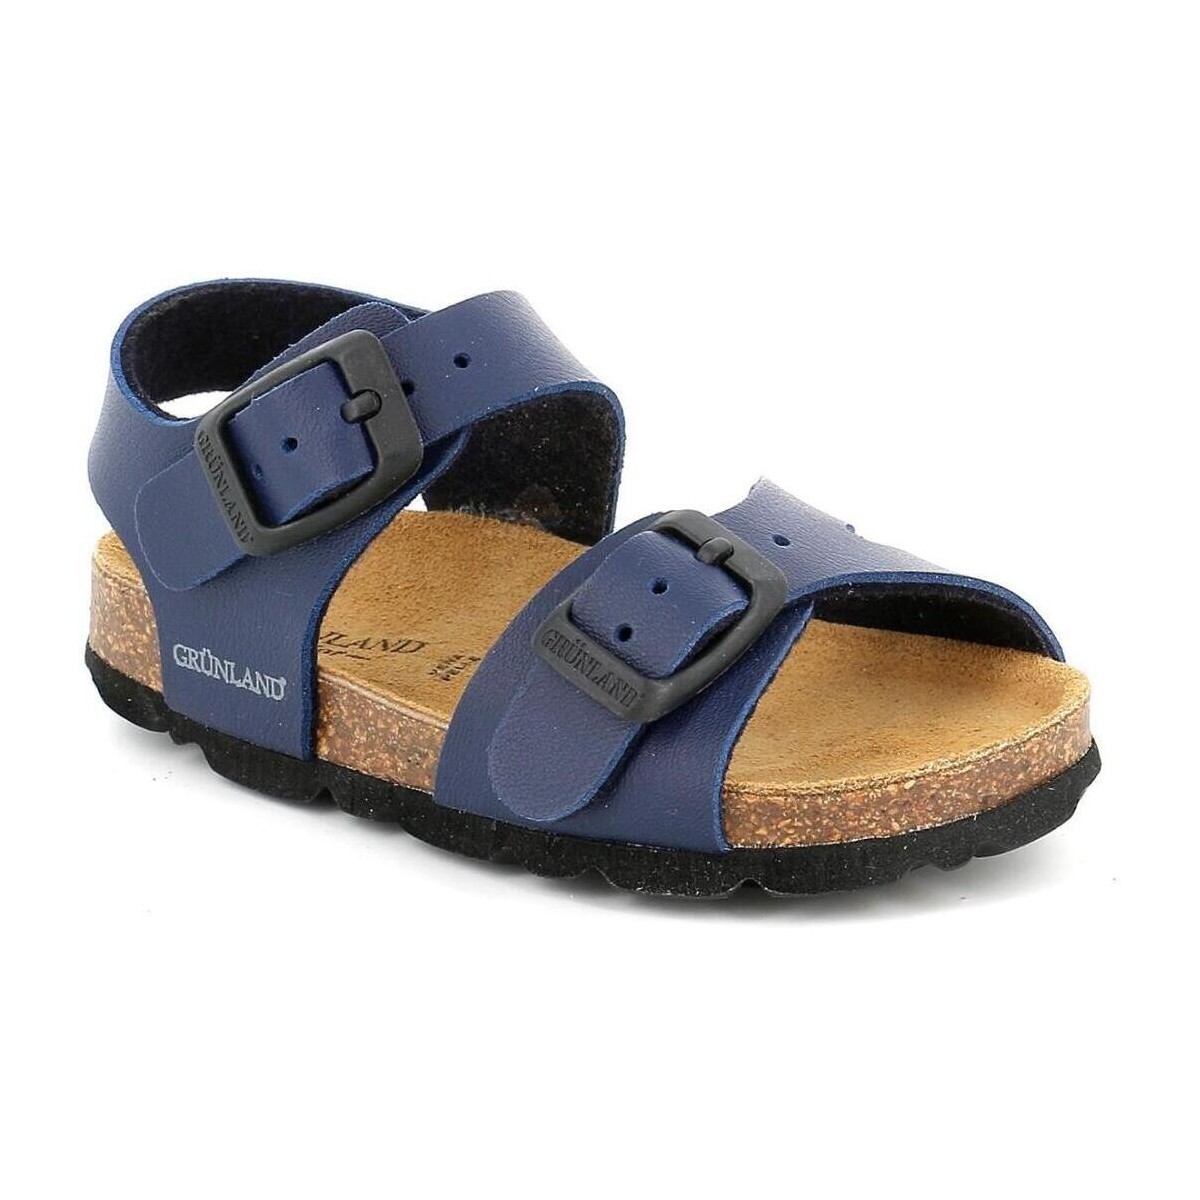 Chaussures Enfant Polo Ralph Lauren Grunland GRU-CCC-SB0027-BL Bleu